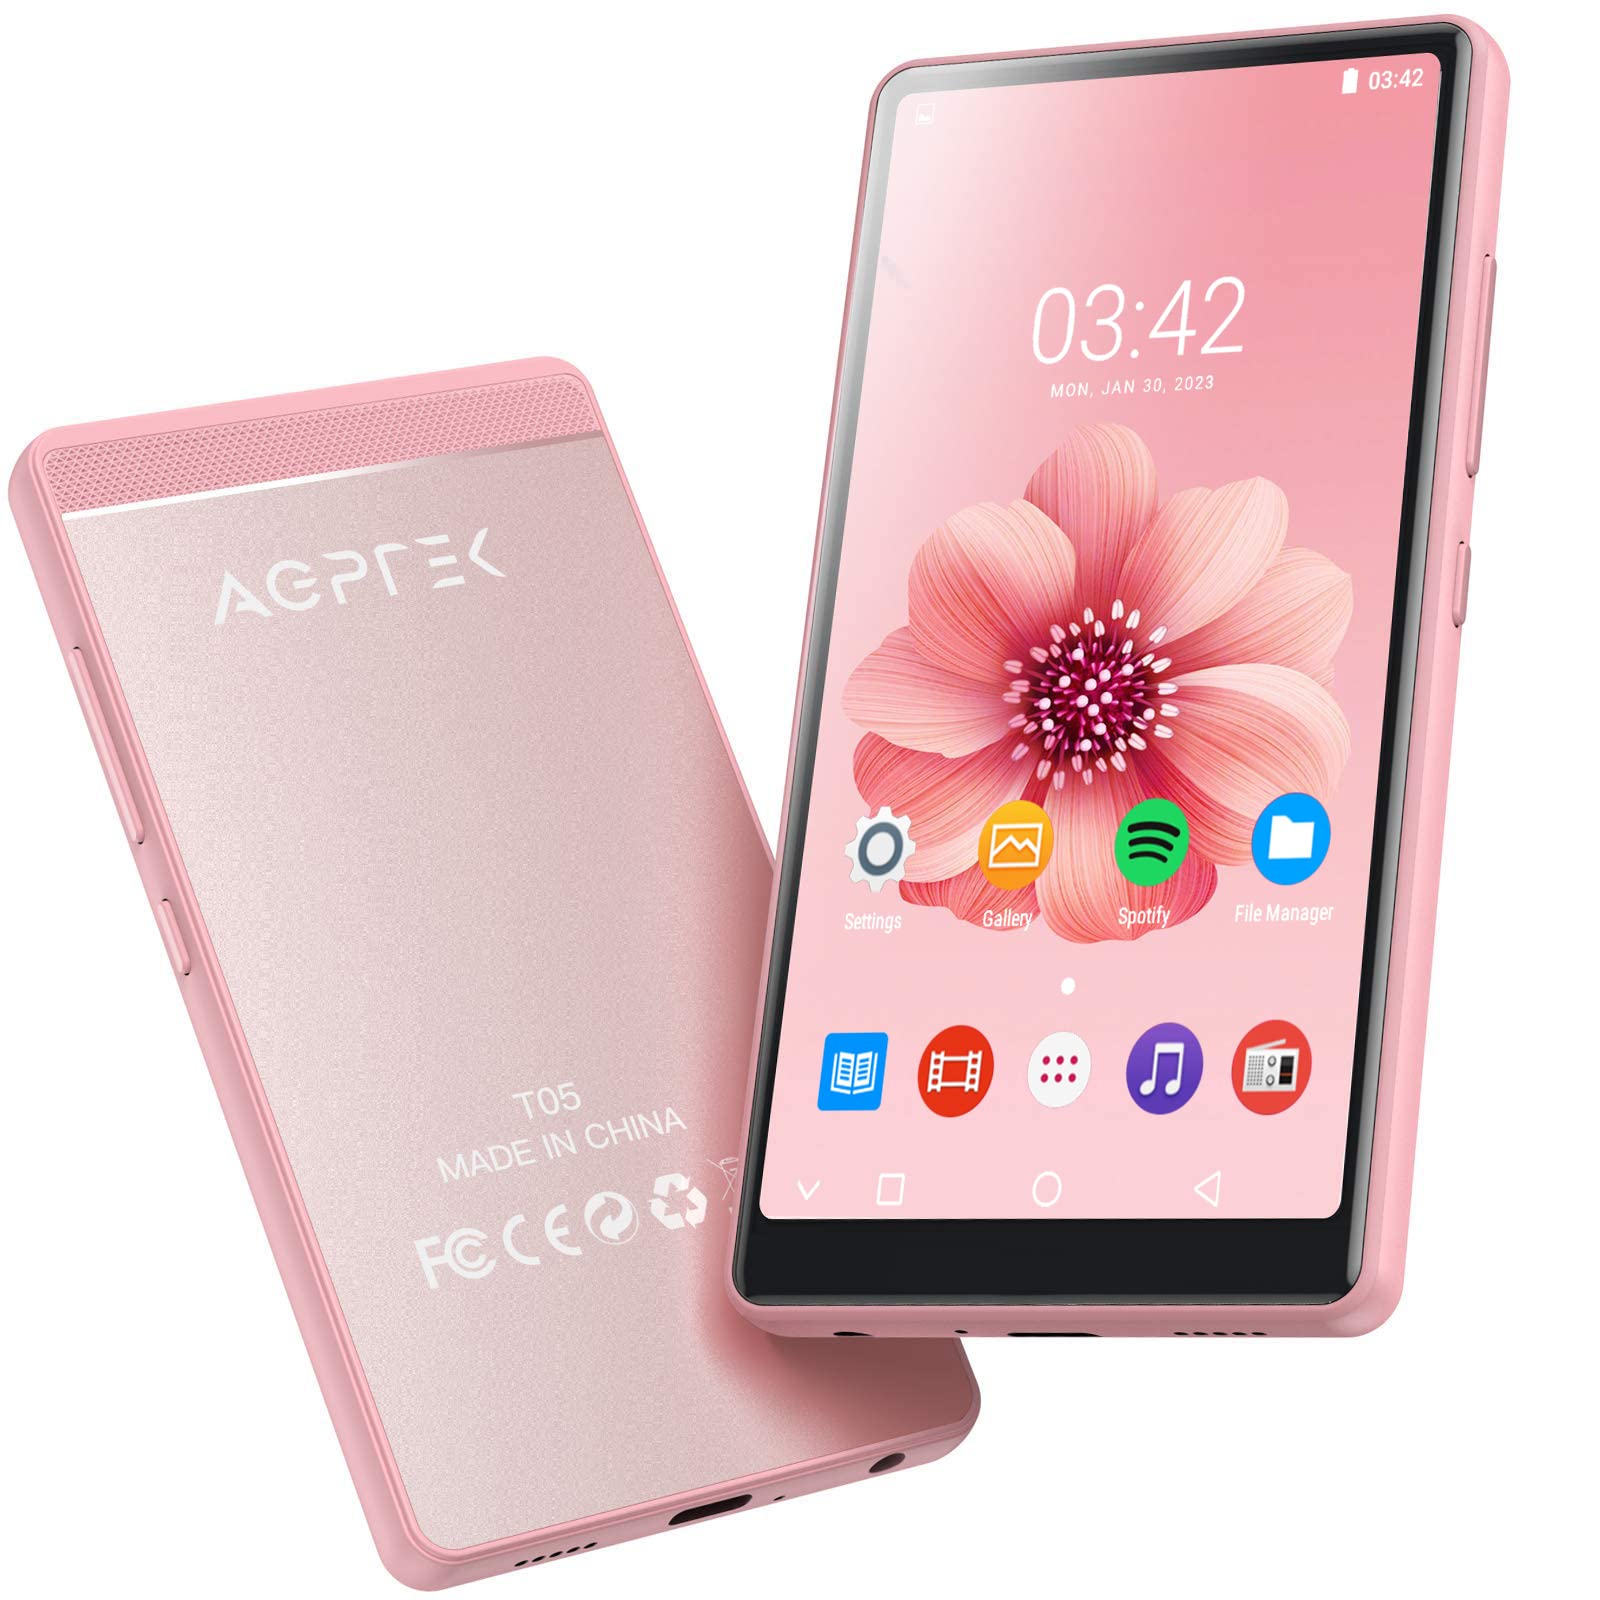 AGPTEK MP3プレーヤー MP4プレーヤー 4インチHD大画面 タッチスクリーン Androidシステム Wi-Fi対応 Bluetooth4.0搭載 スピーカー内臓 8G